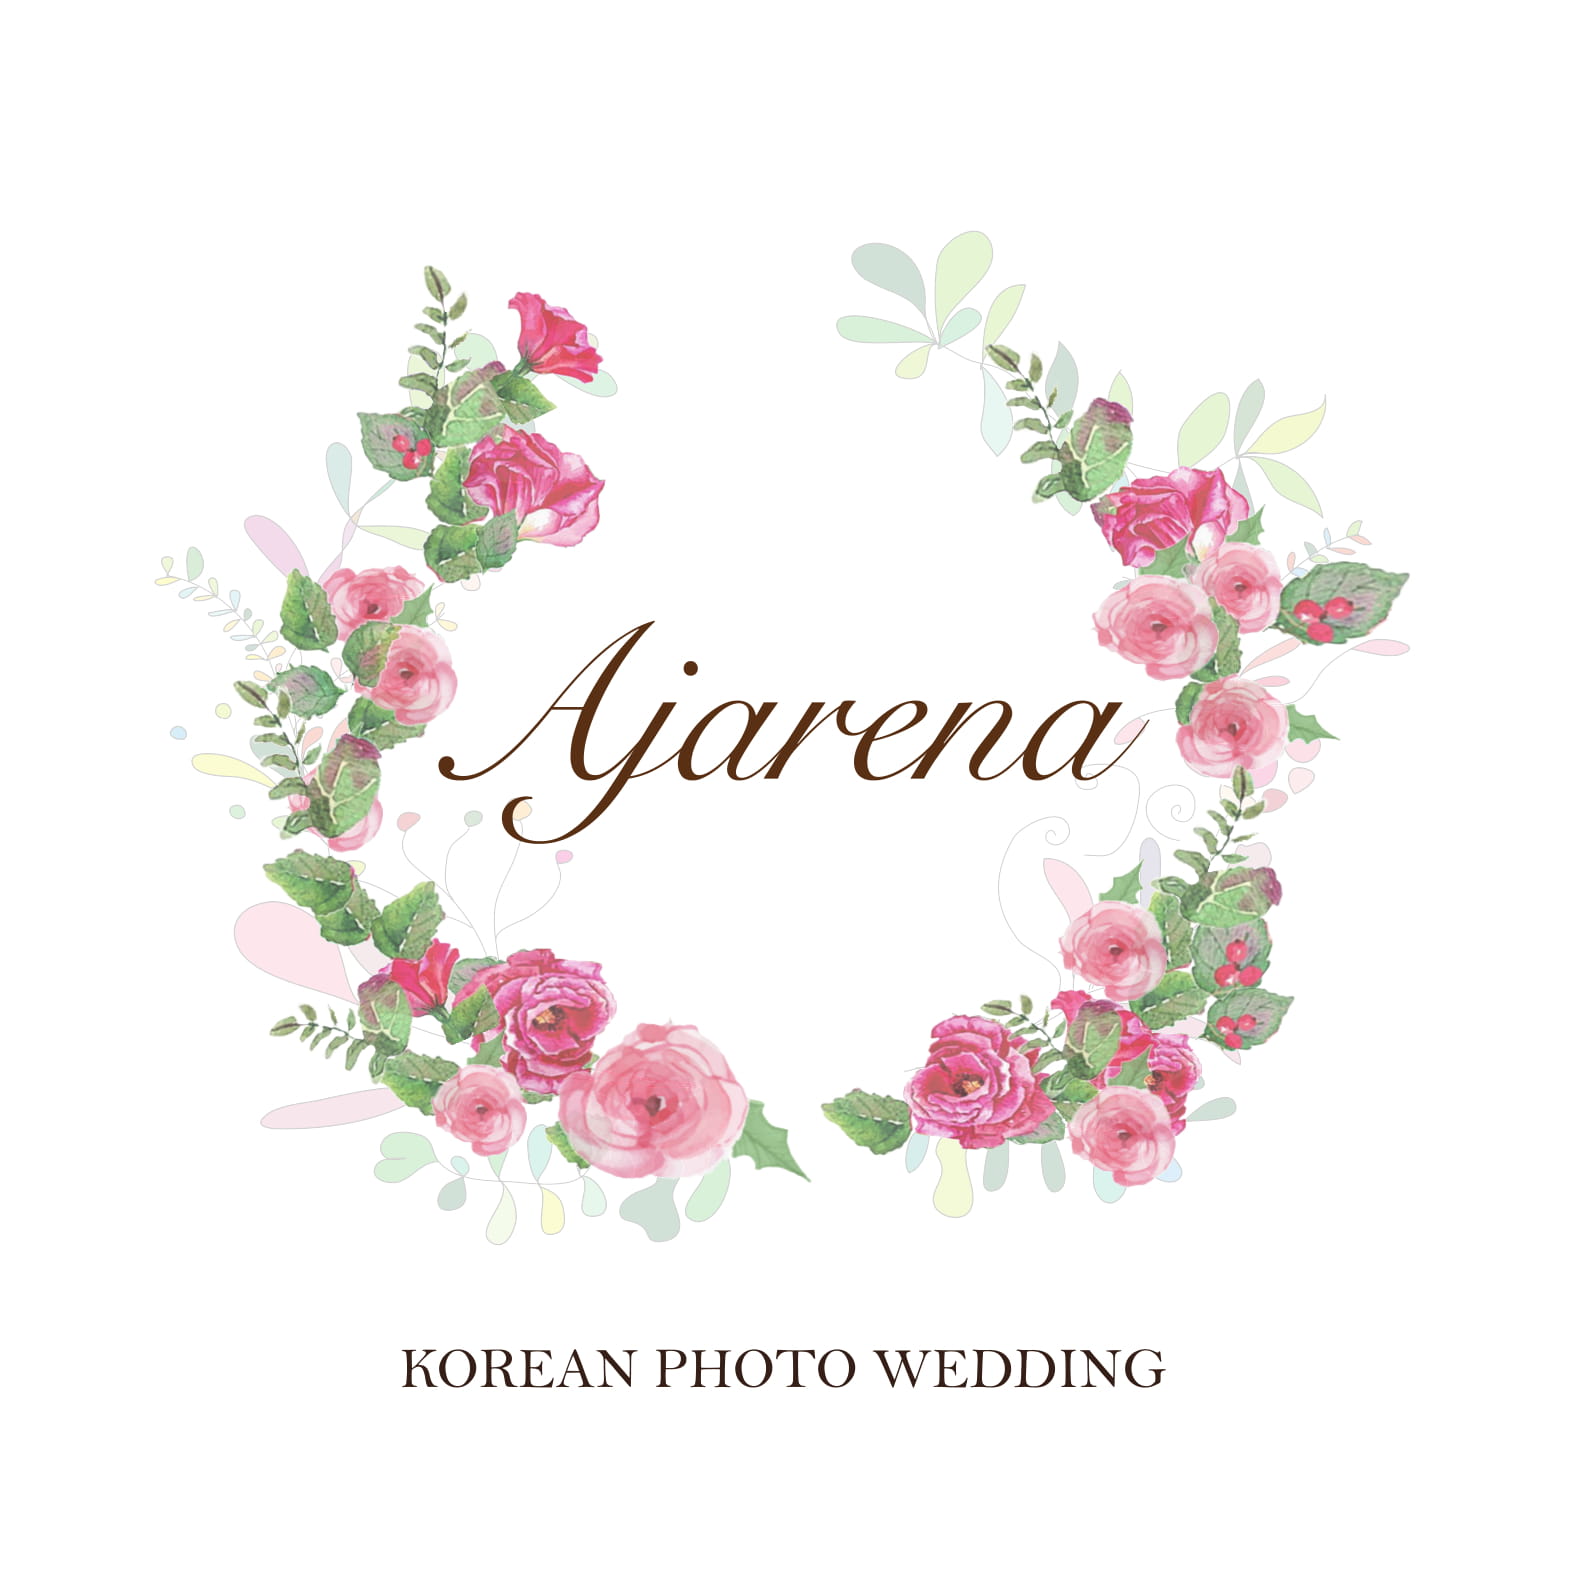 logo loading of ajarena wedding